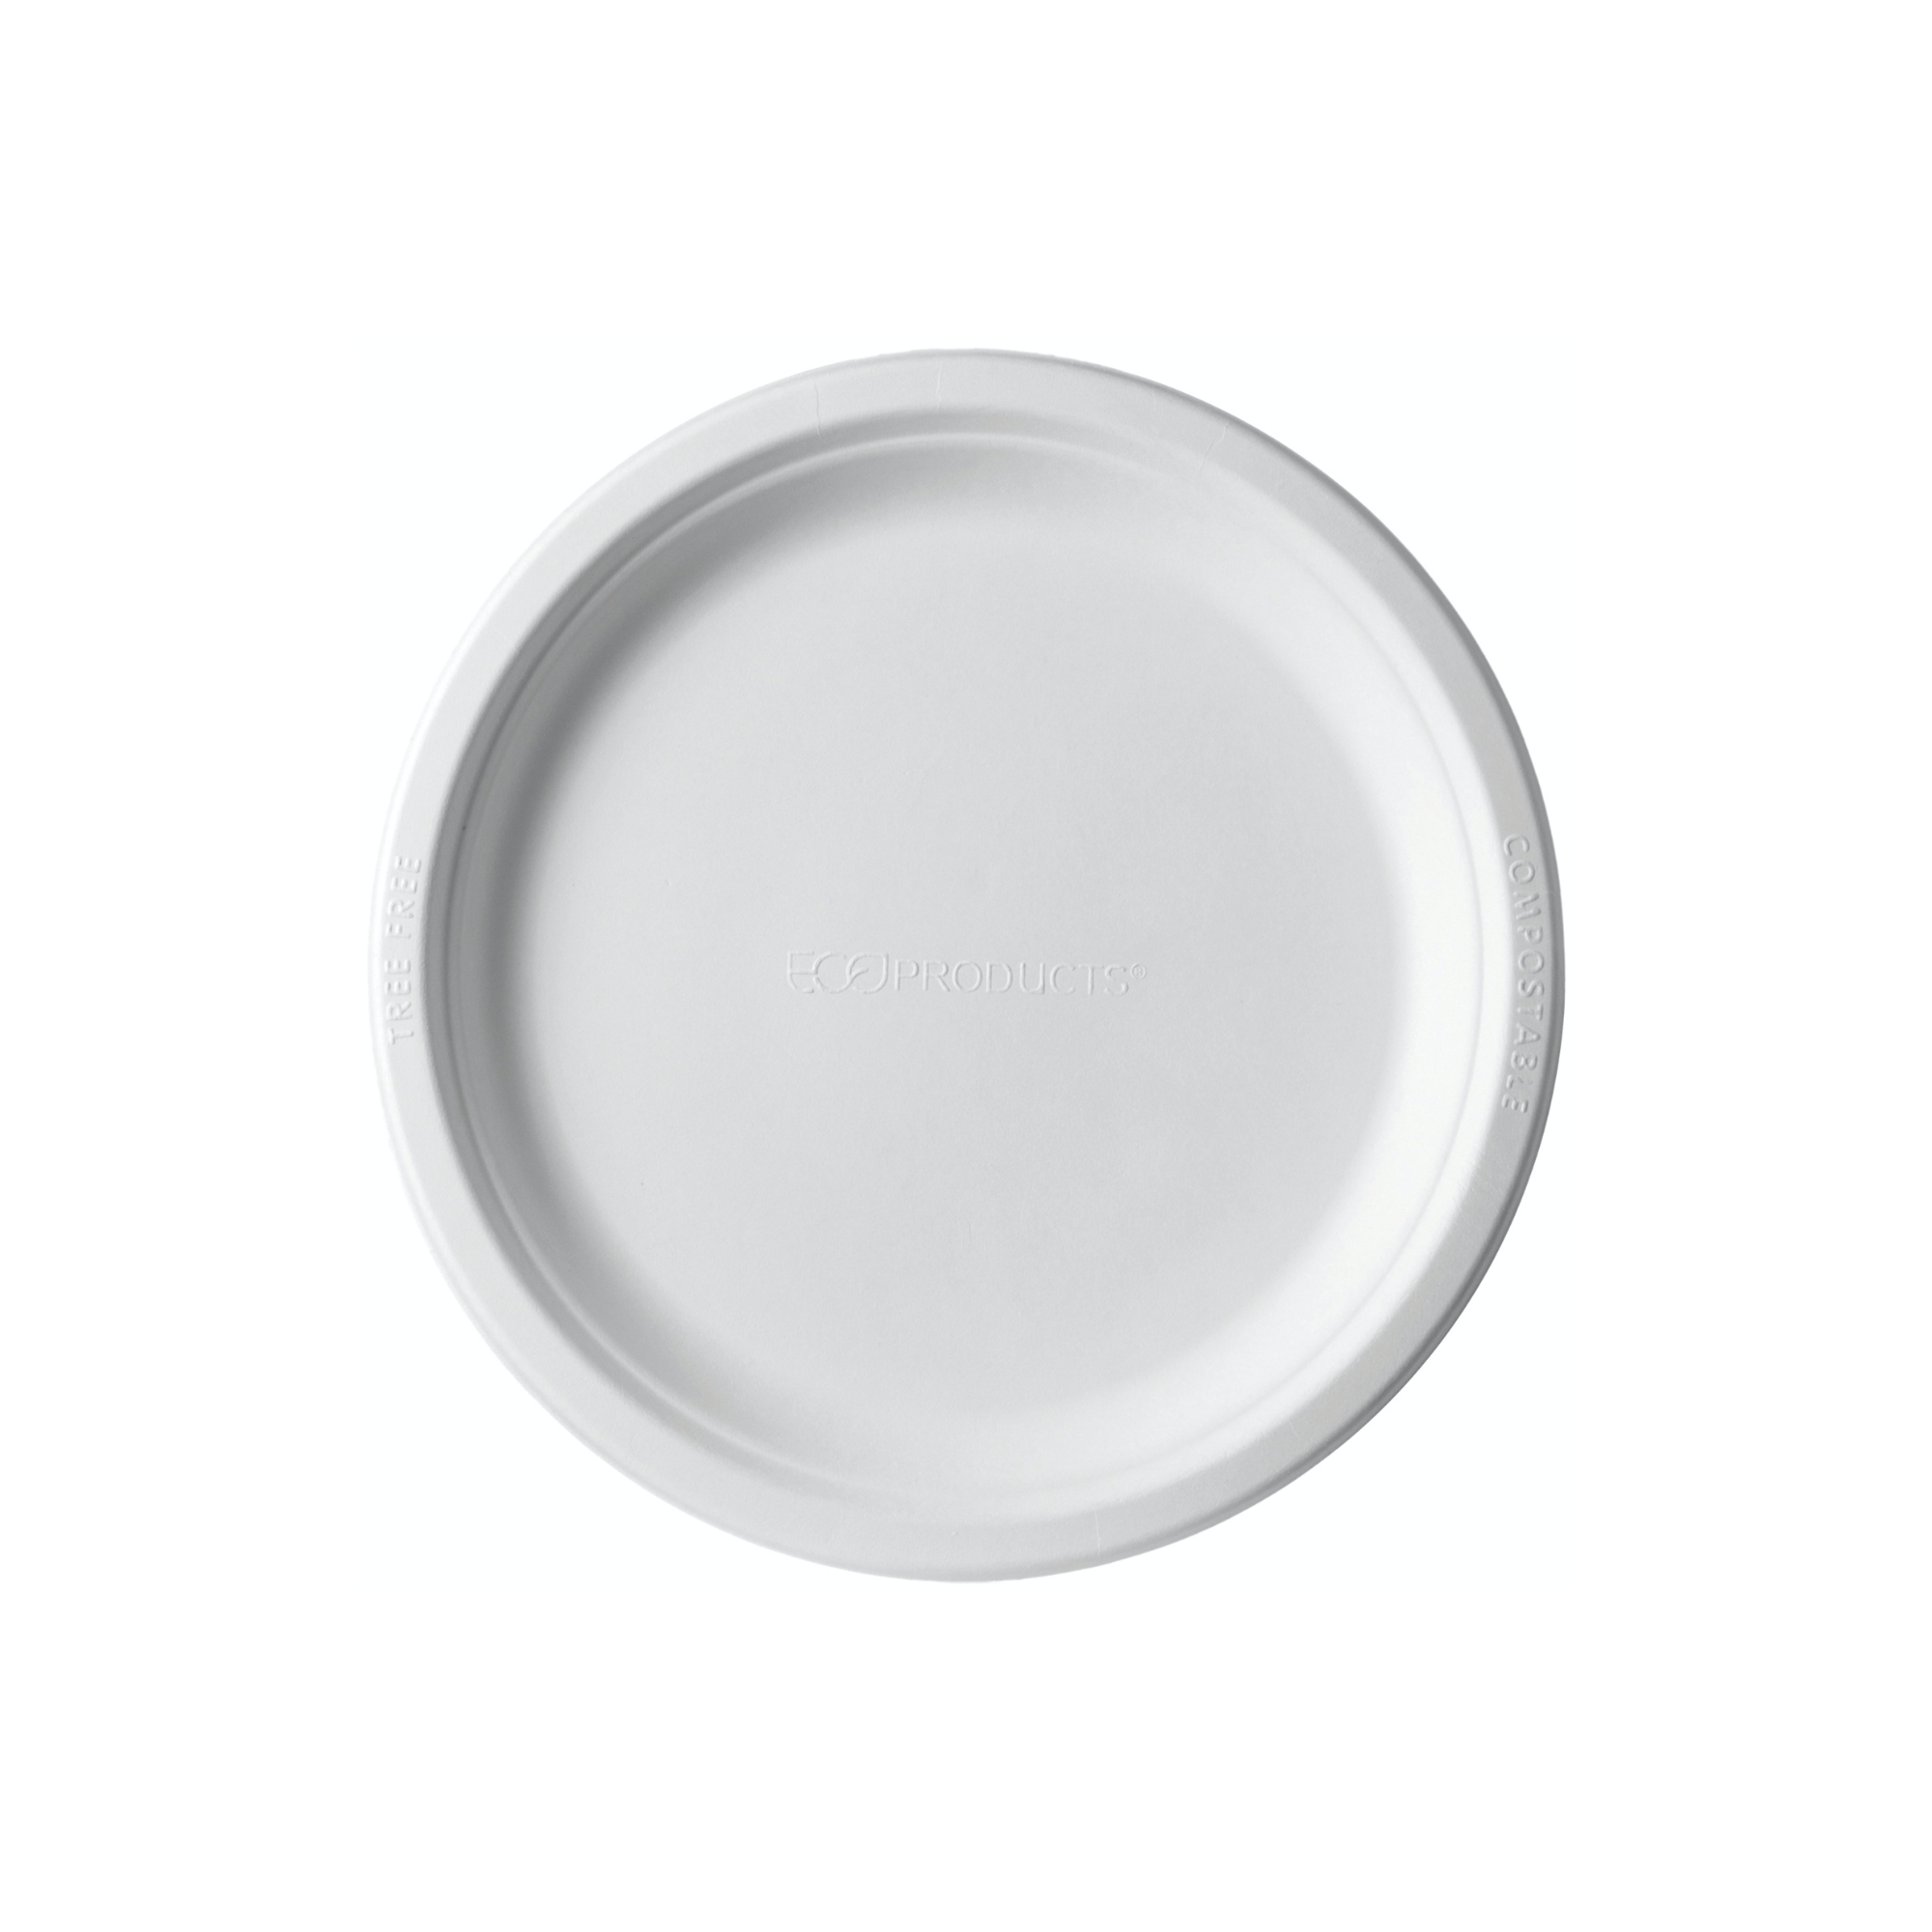 Lapos tányér - Cukornád lapos tányér 250 mm - 50 db - Greenstic